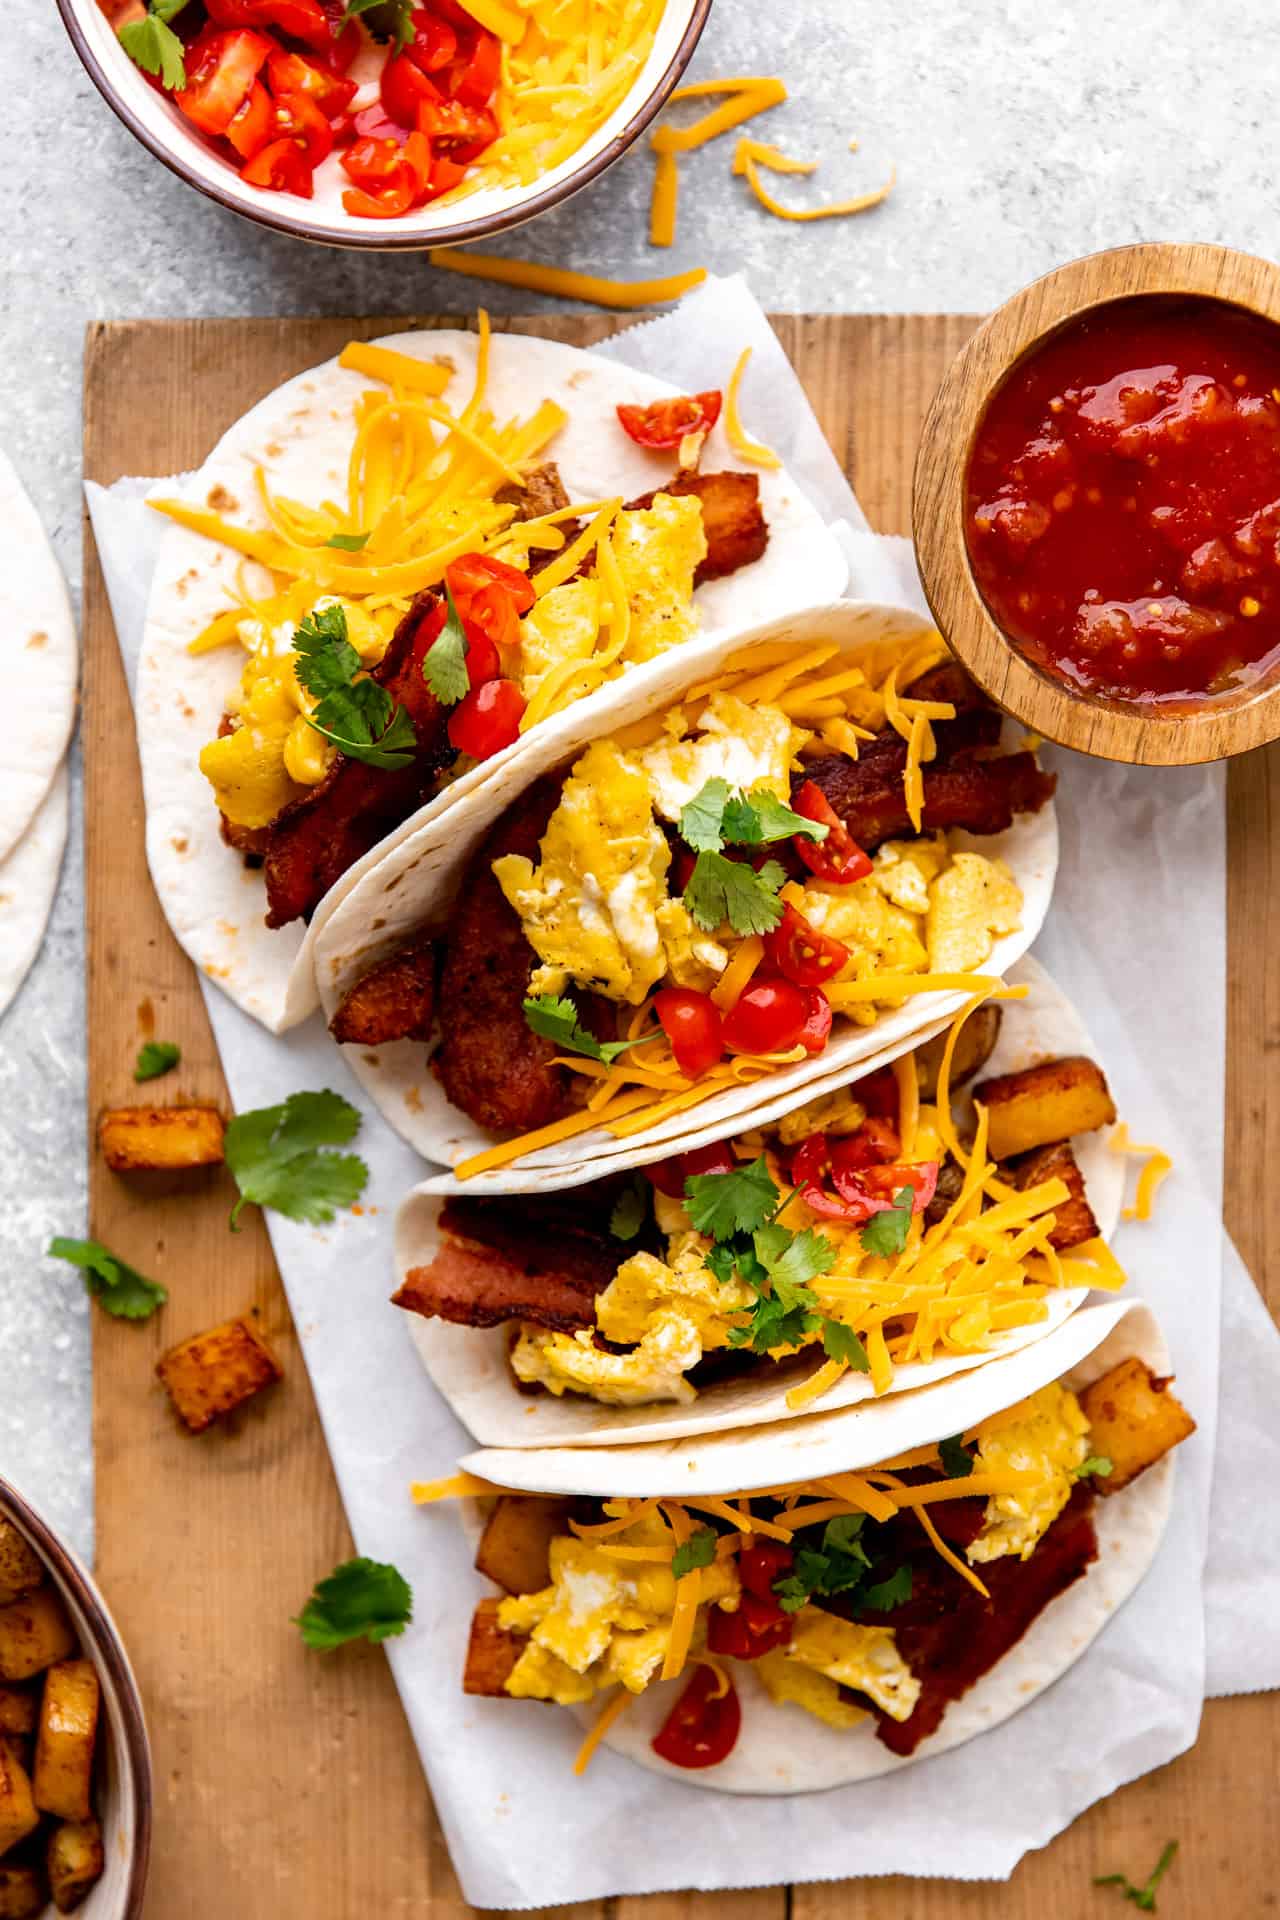 Plateau de tacos de petit-déjeuner chargés d'œufs, de bacon et de pommes de terre, servis avec de la salsa.